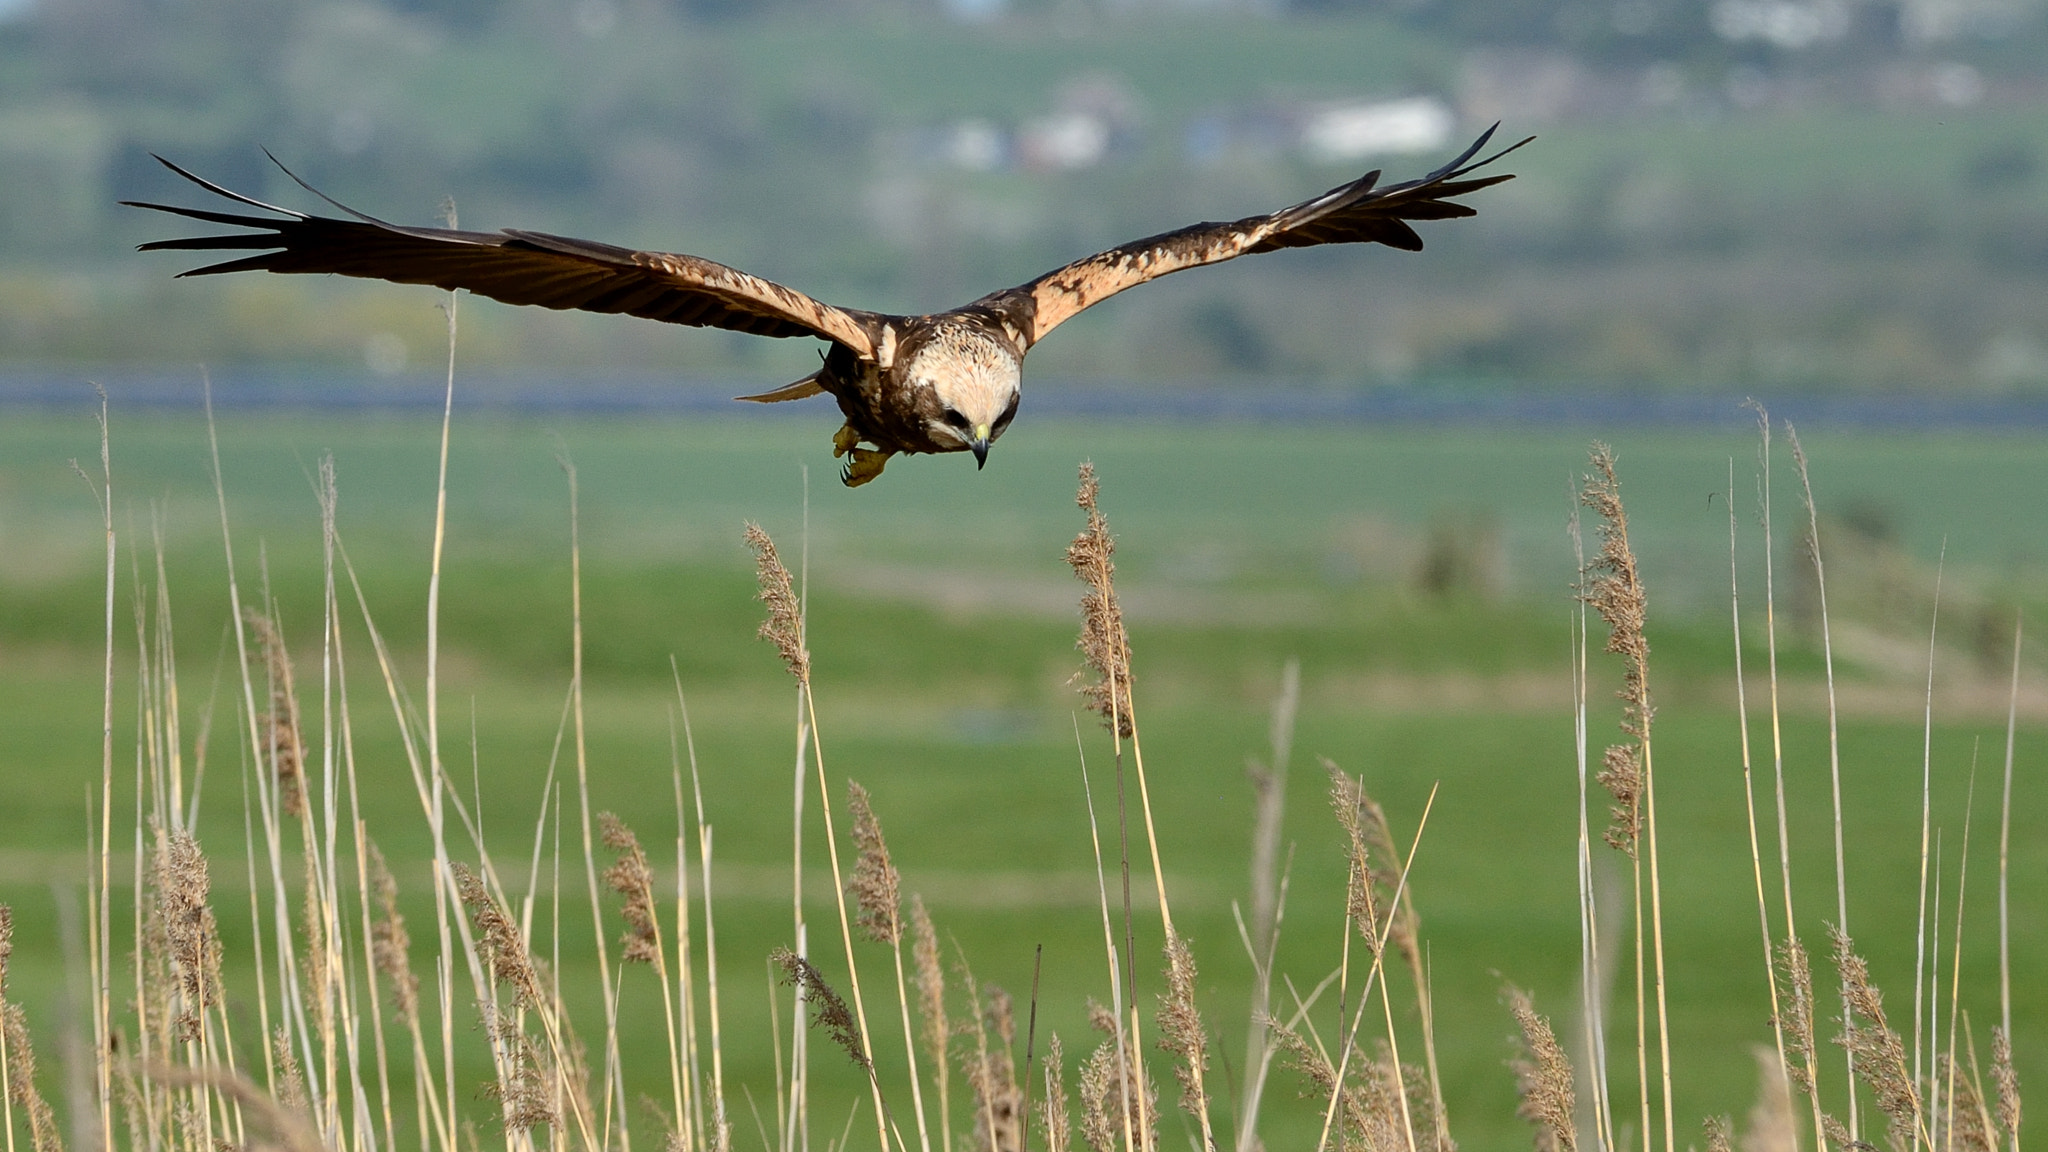 Nikon AF Nikkor 80-400mm F4.5-5.6D ED VR sample photo. Marsh harrier, hovering over reeds at elmley photography